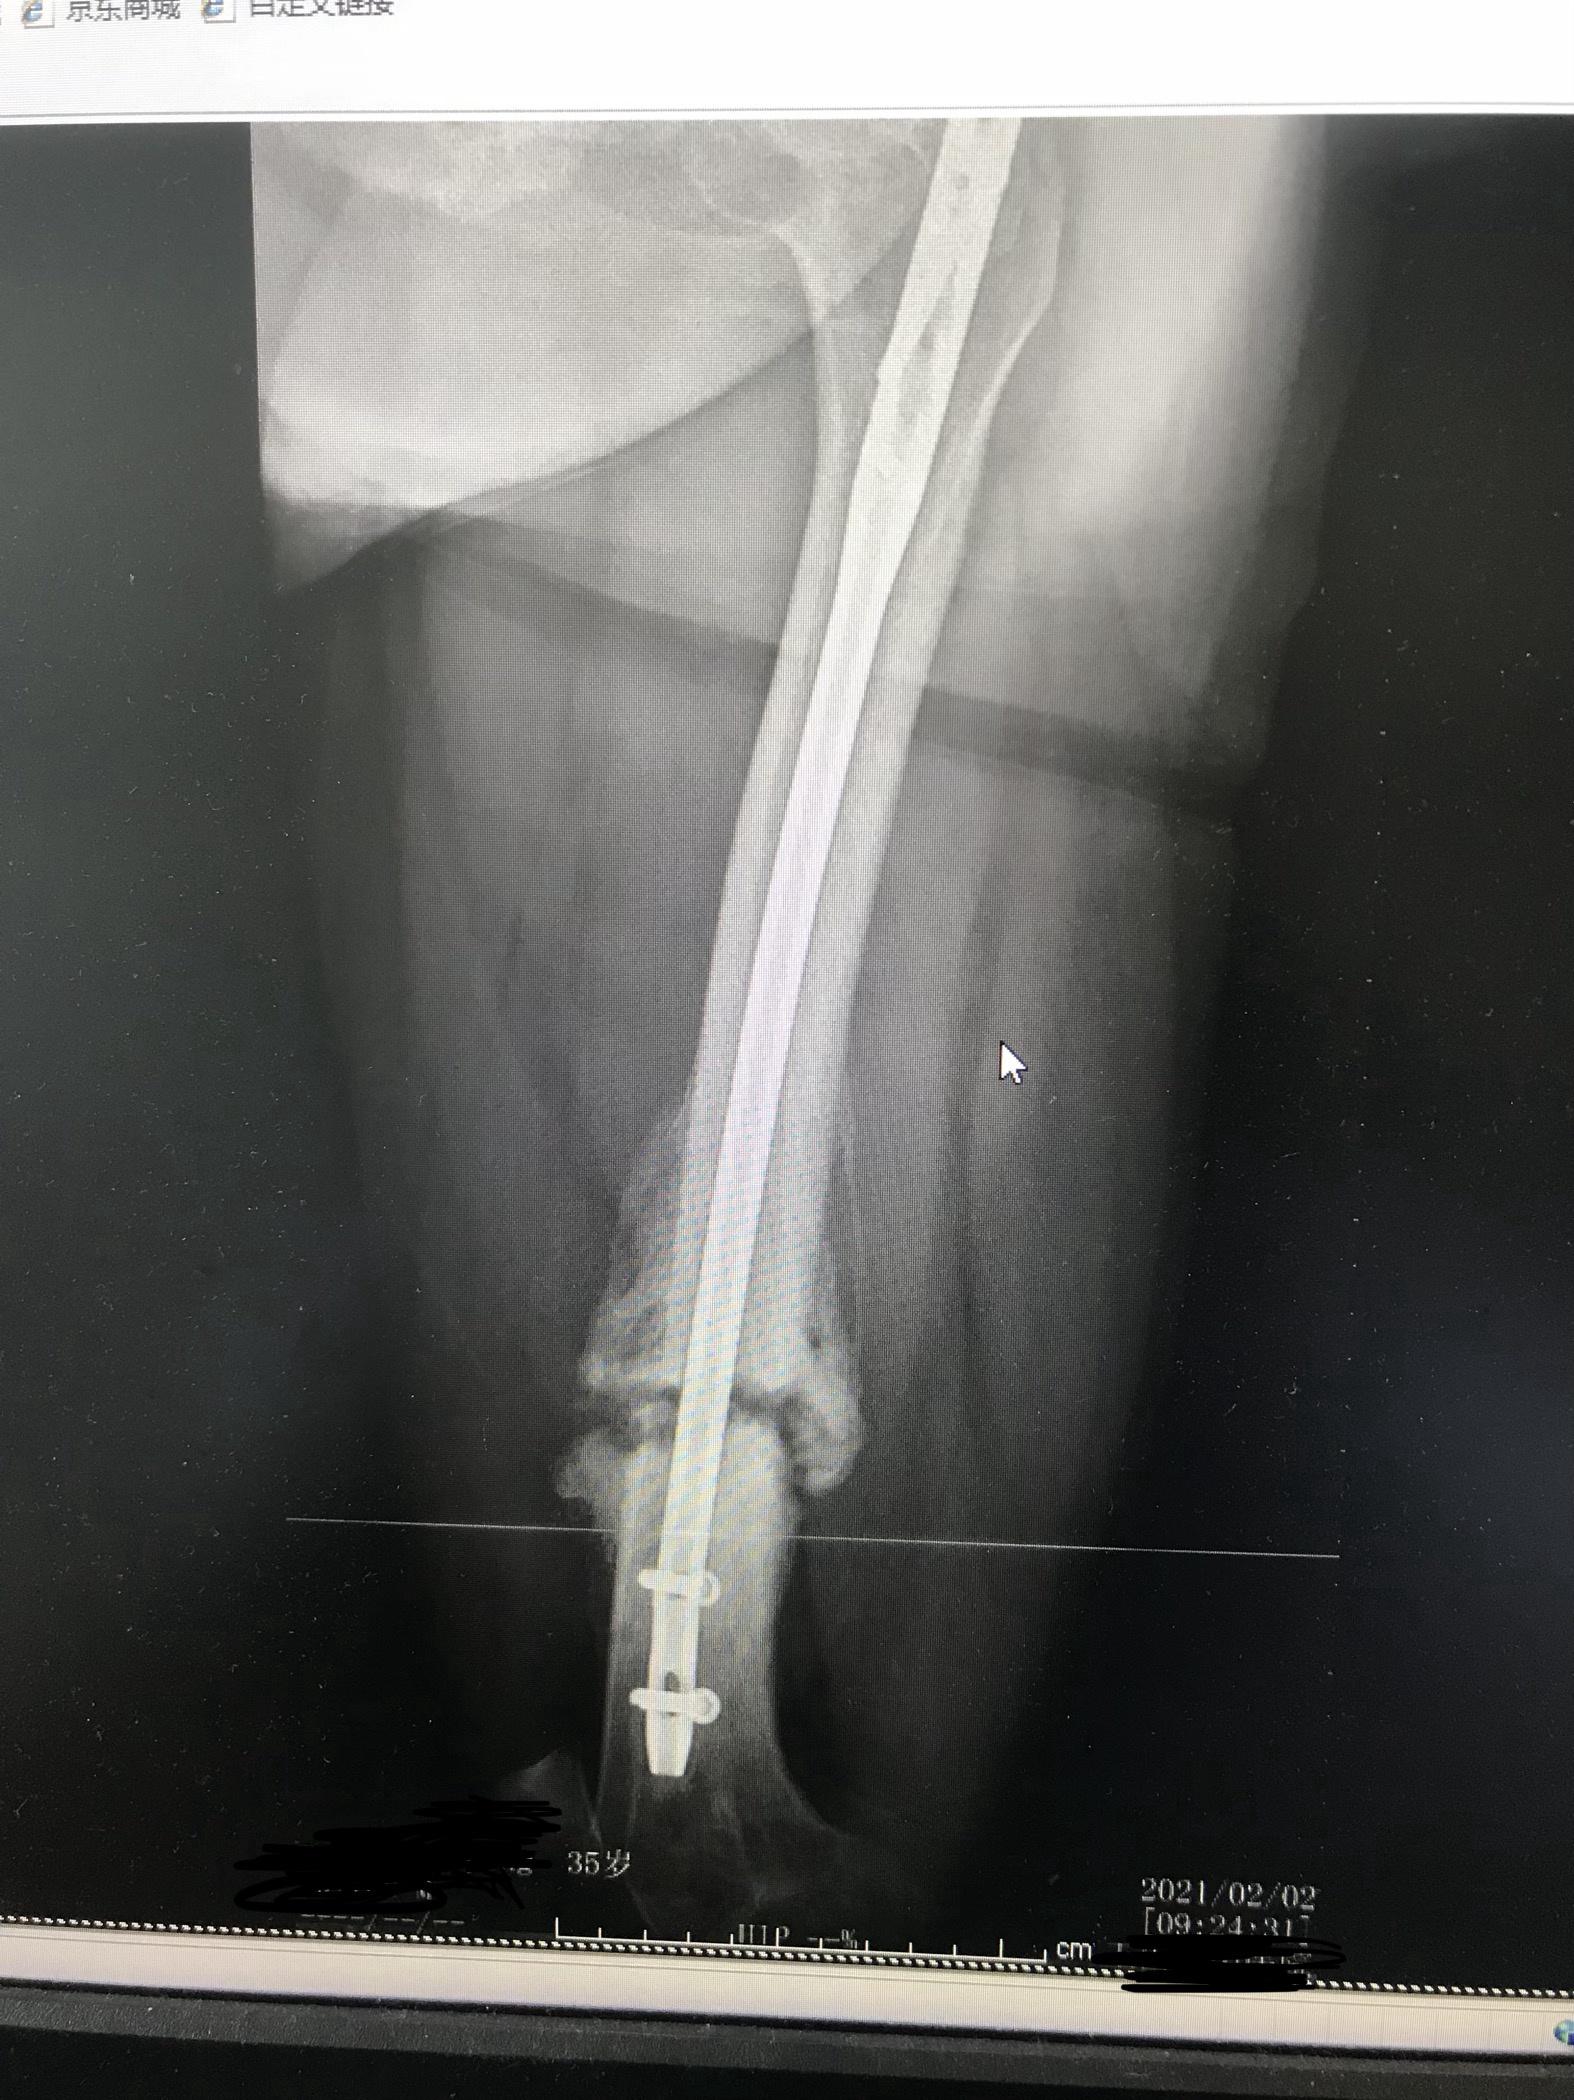 髌骨骨折后钢丝断裂怎么办？-髌骨骨折手术后2个月腿打弯时发现膝盖皮肤被里面异物纵向...